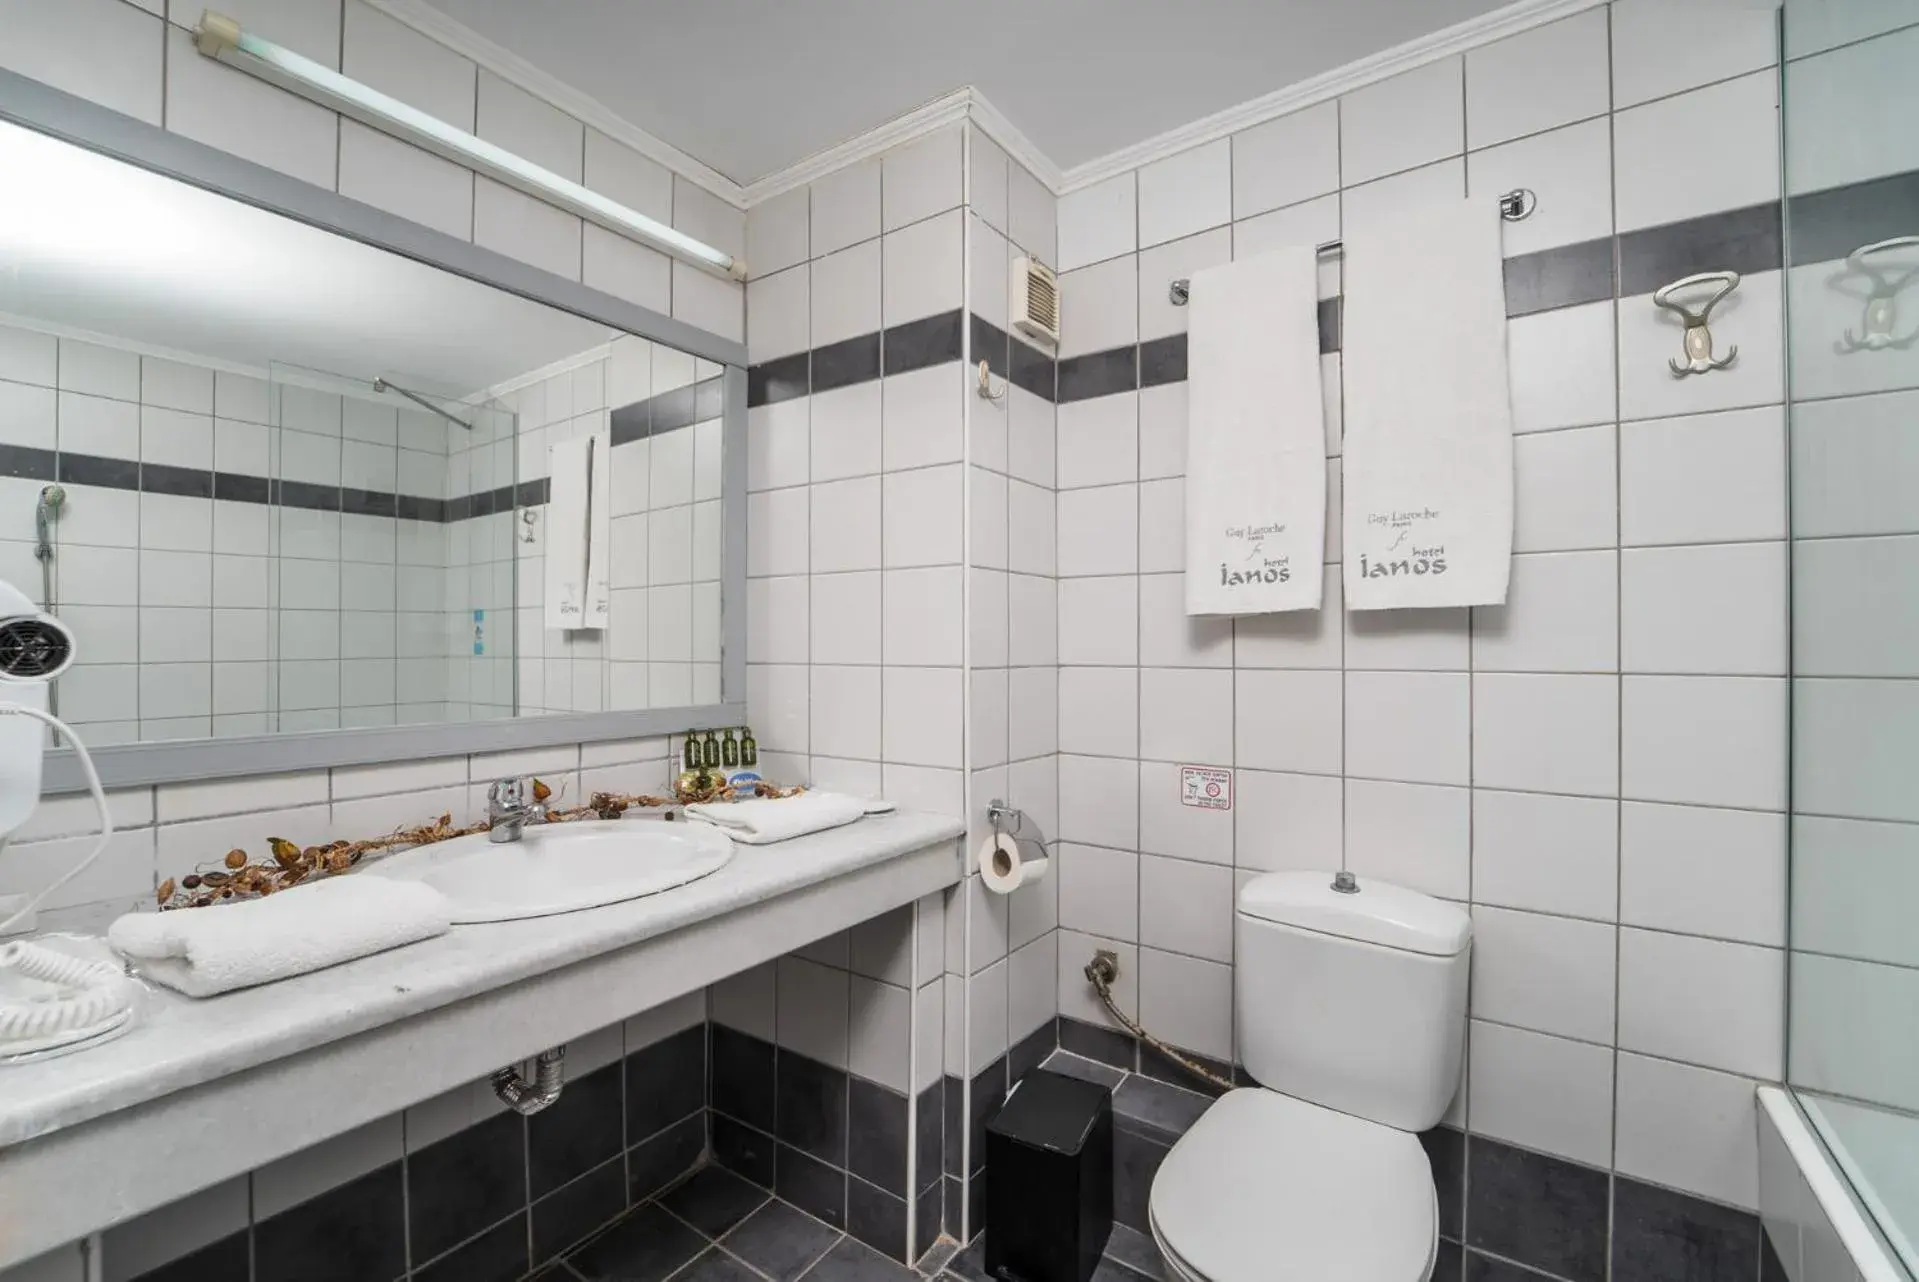 Bathroom in Ianos Hotel